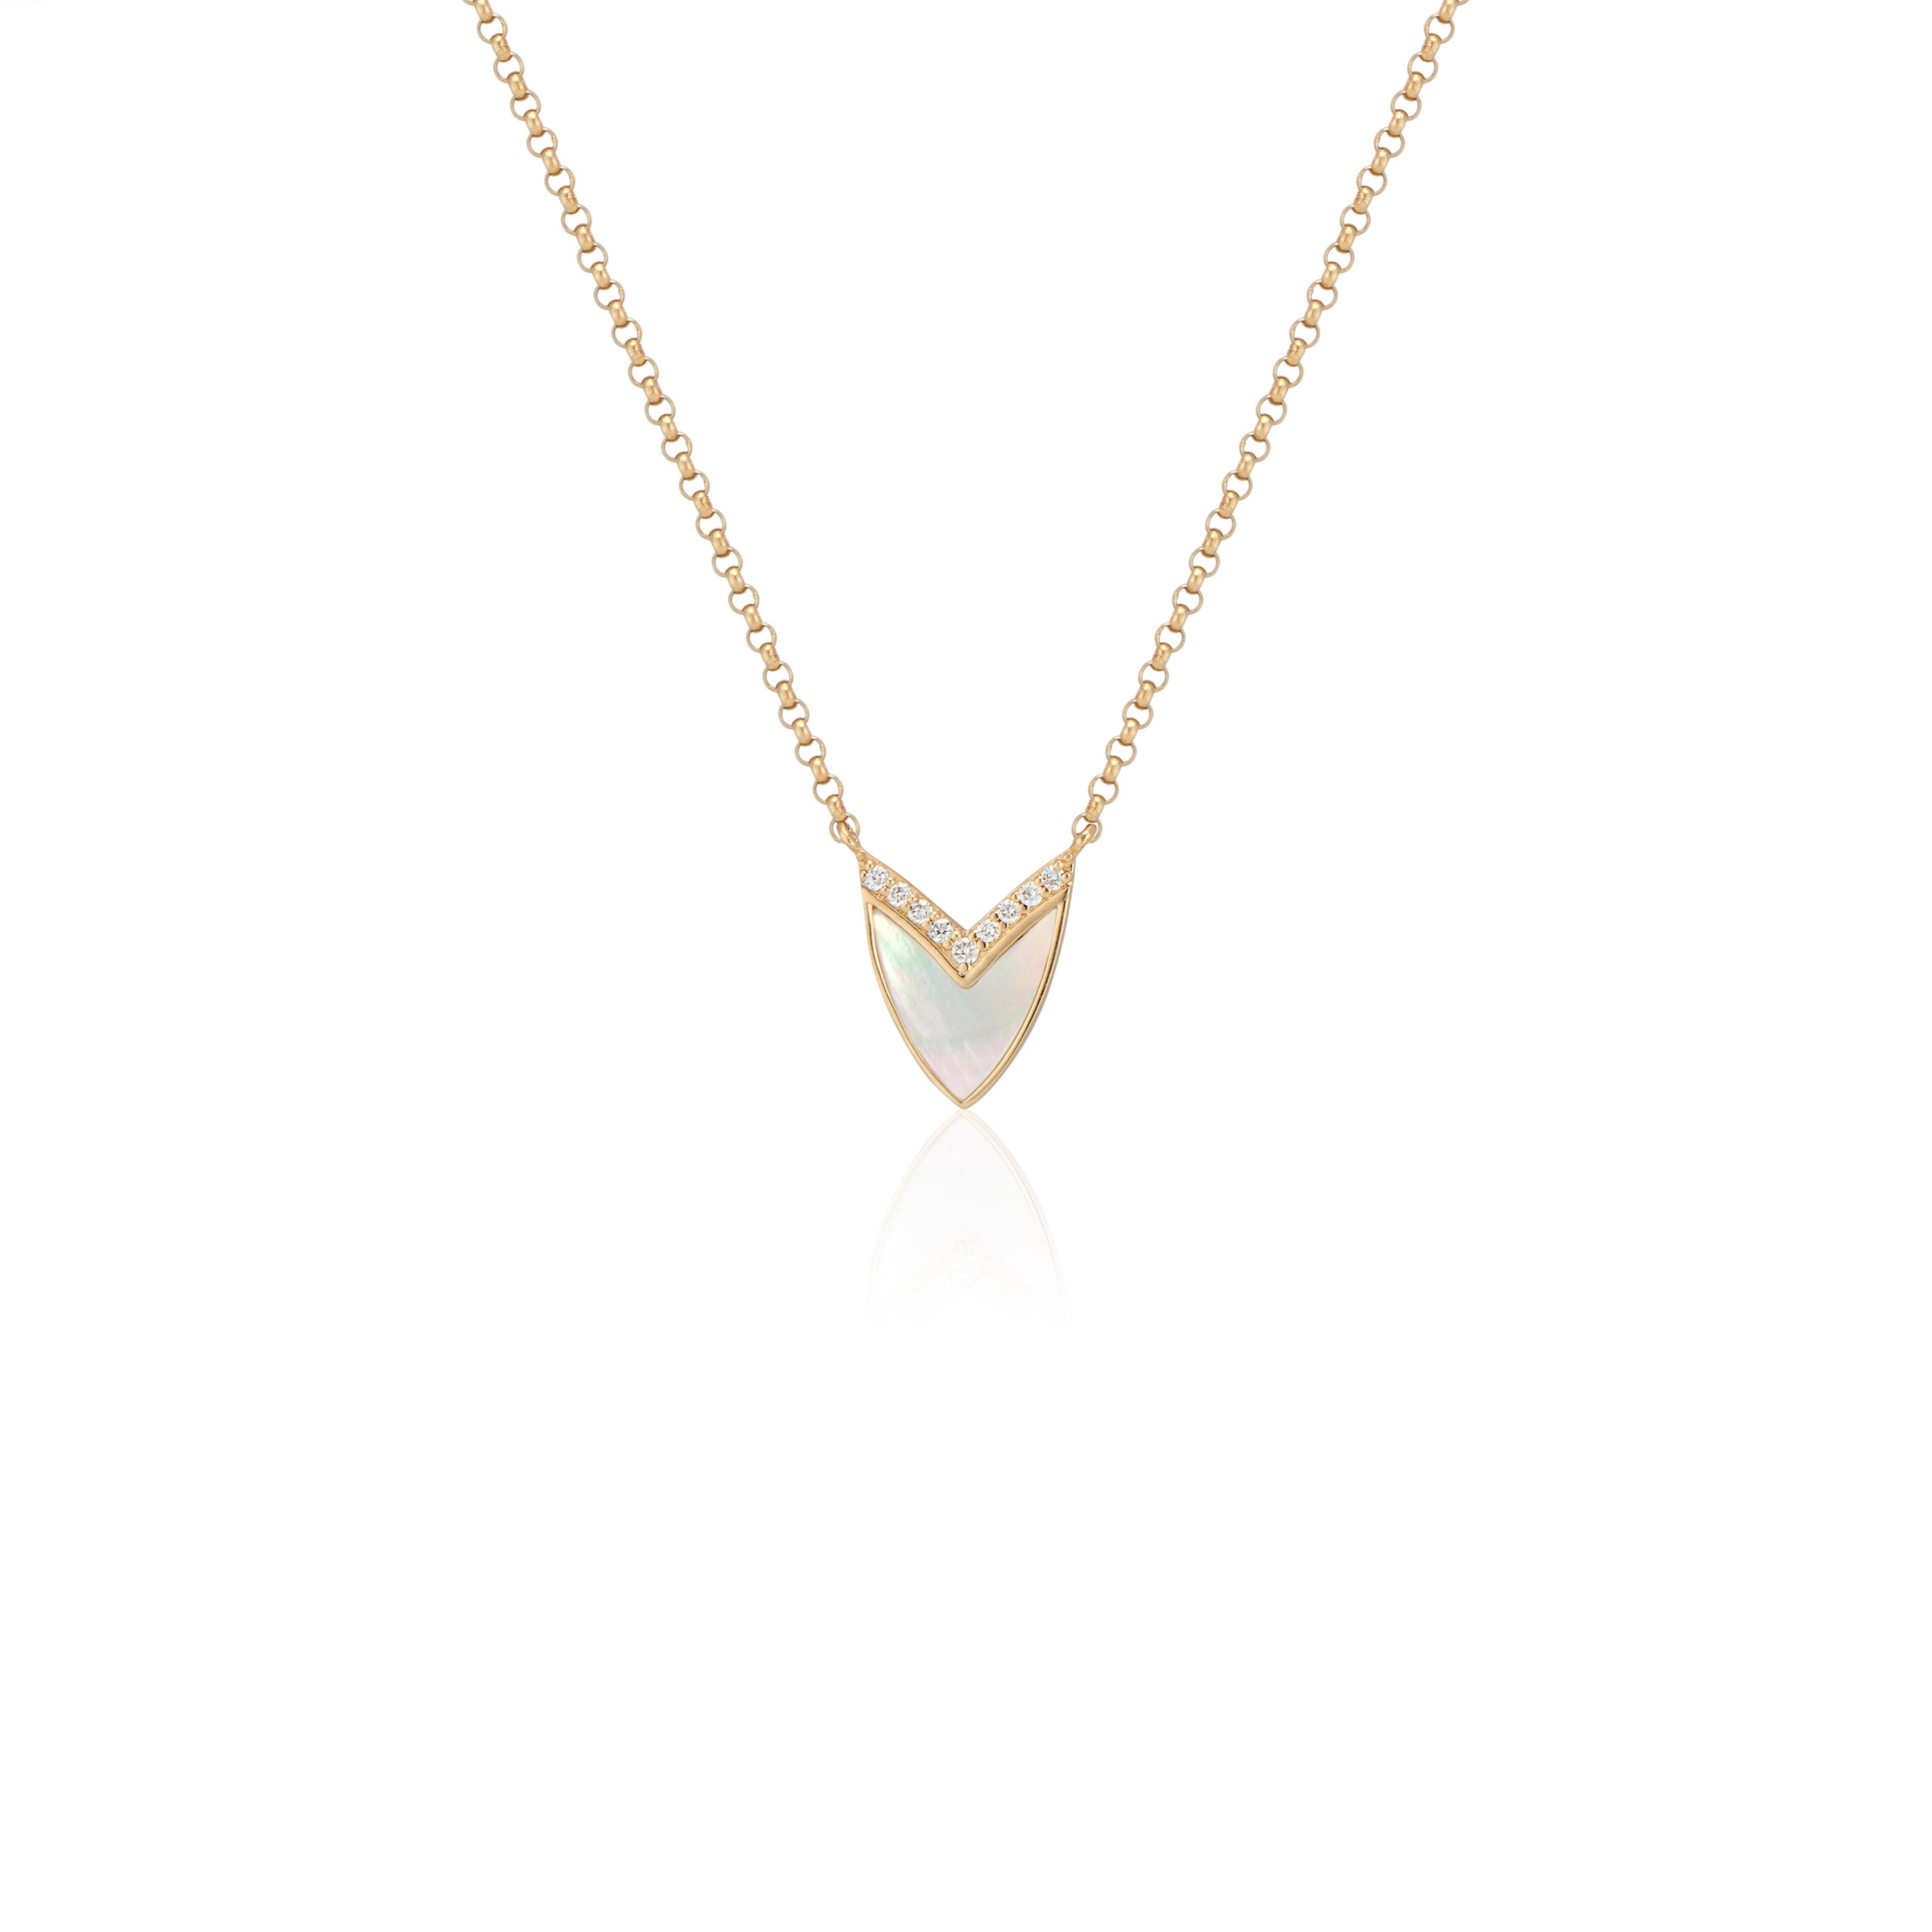 Subtilement élégant, le collier Coeur cubiste de Ri Noor avec nacre, rubis et diamants ajoute une sophistication raffinée à toute tenue. Le pendentif s'inspire de la forme d'un cœur, l'abstrayant en une forme géométrique complétée par un sertissage